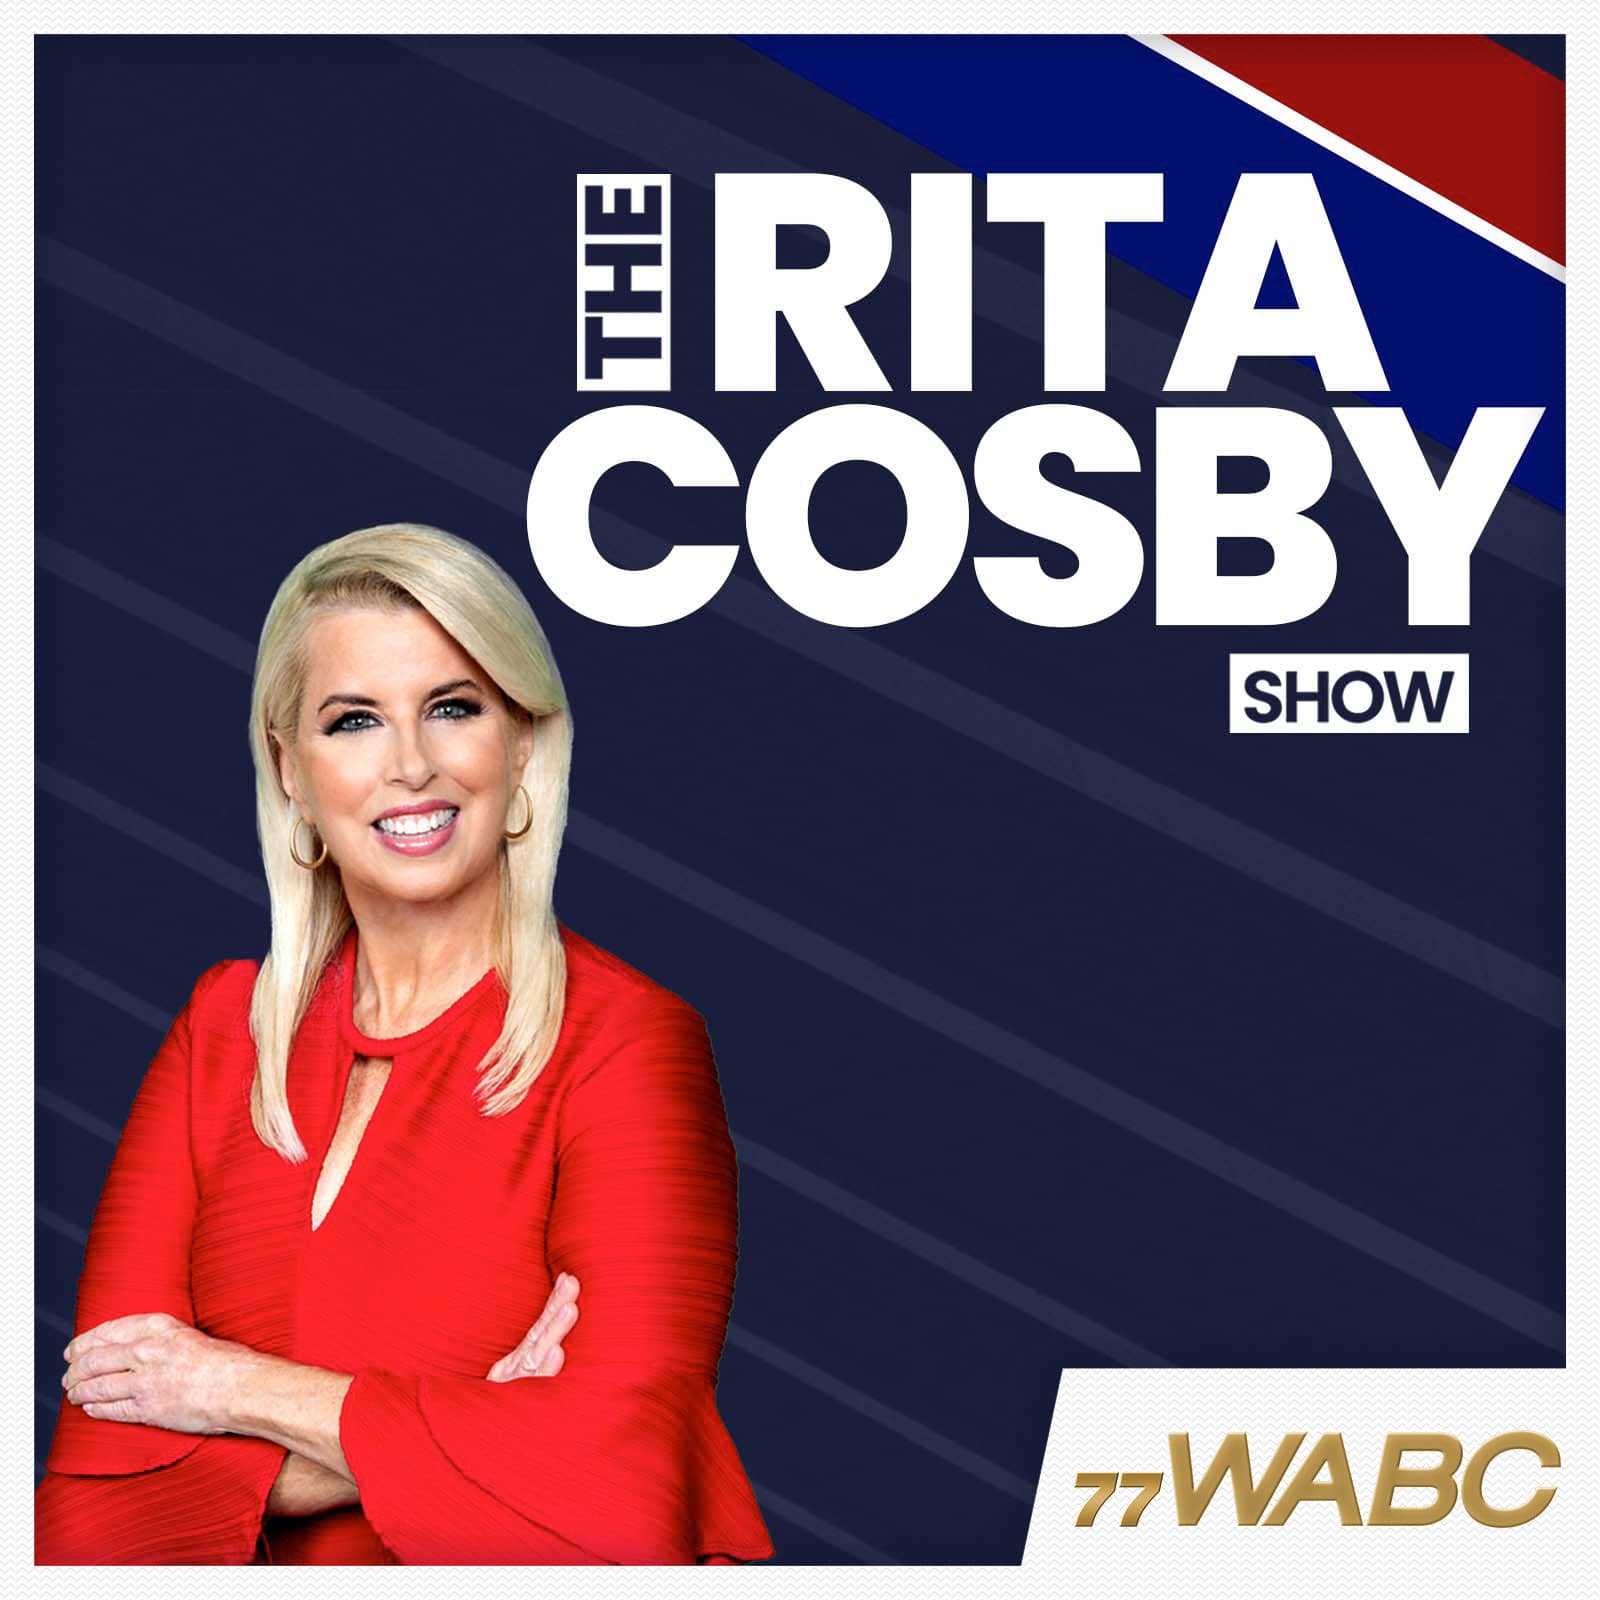 rita-cosby-podcast-new-logo803616